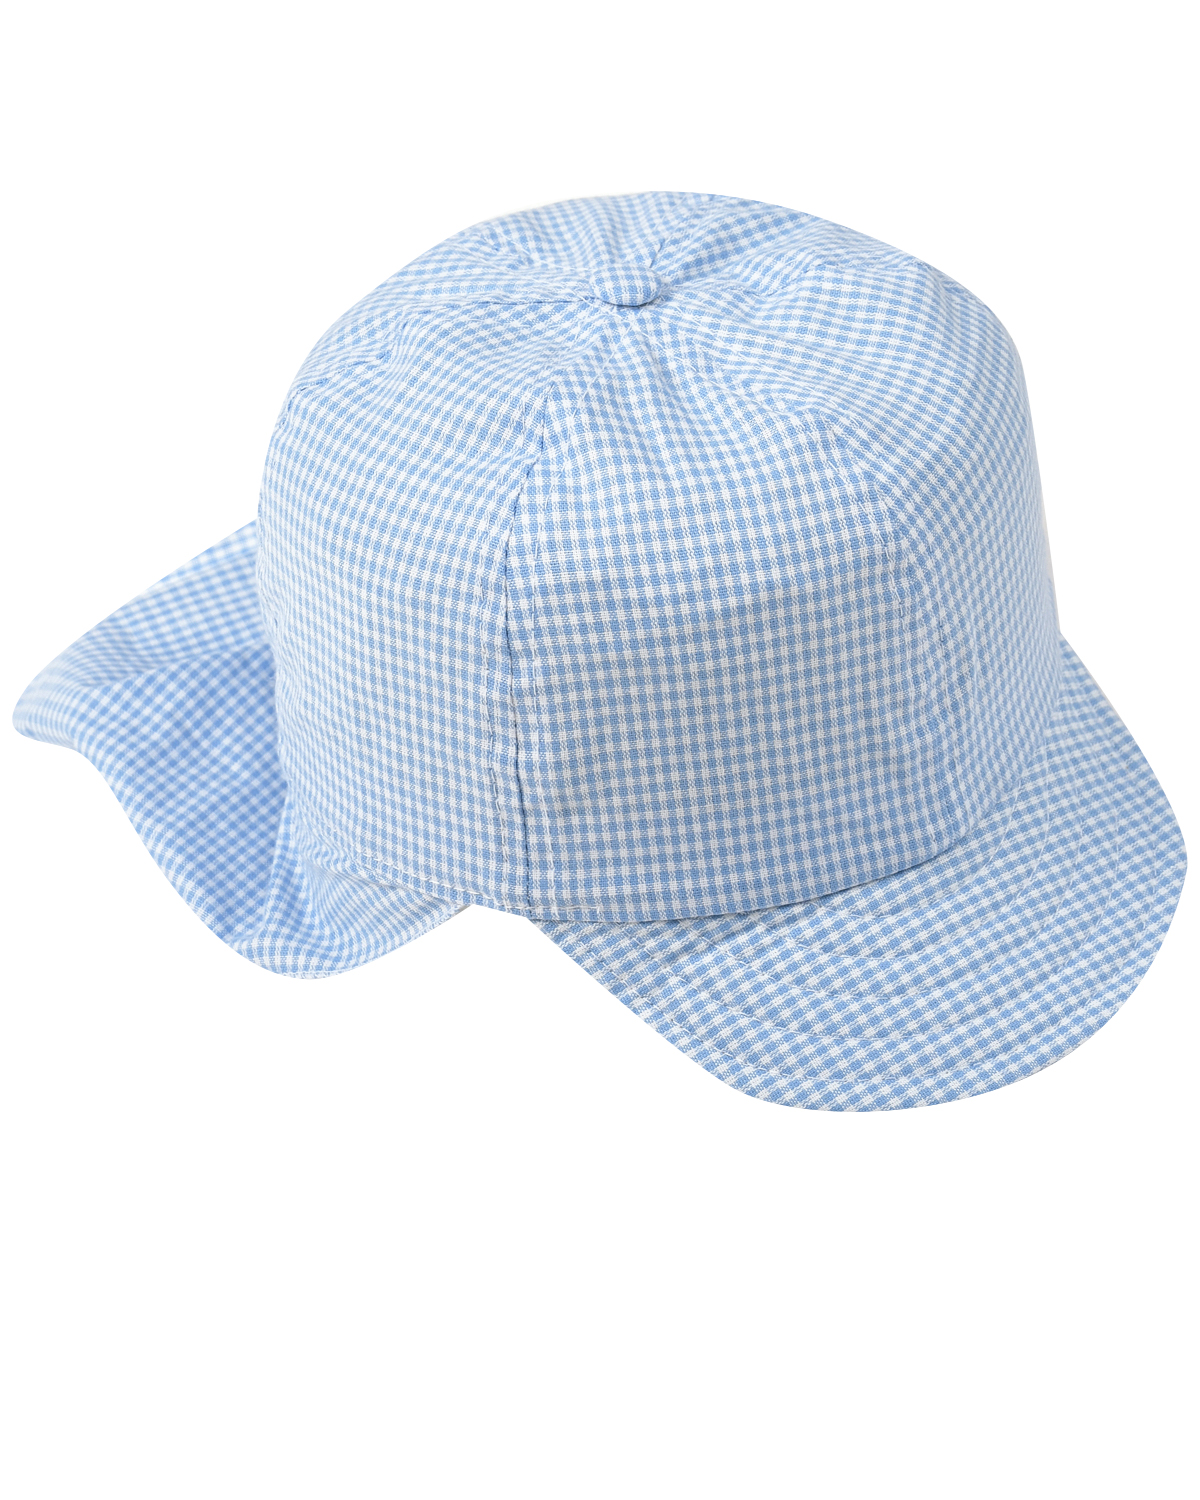 Голубая кепка с защитой Catya щитки футбольные с защитой голеностопа larsen 6820n голубой